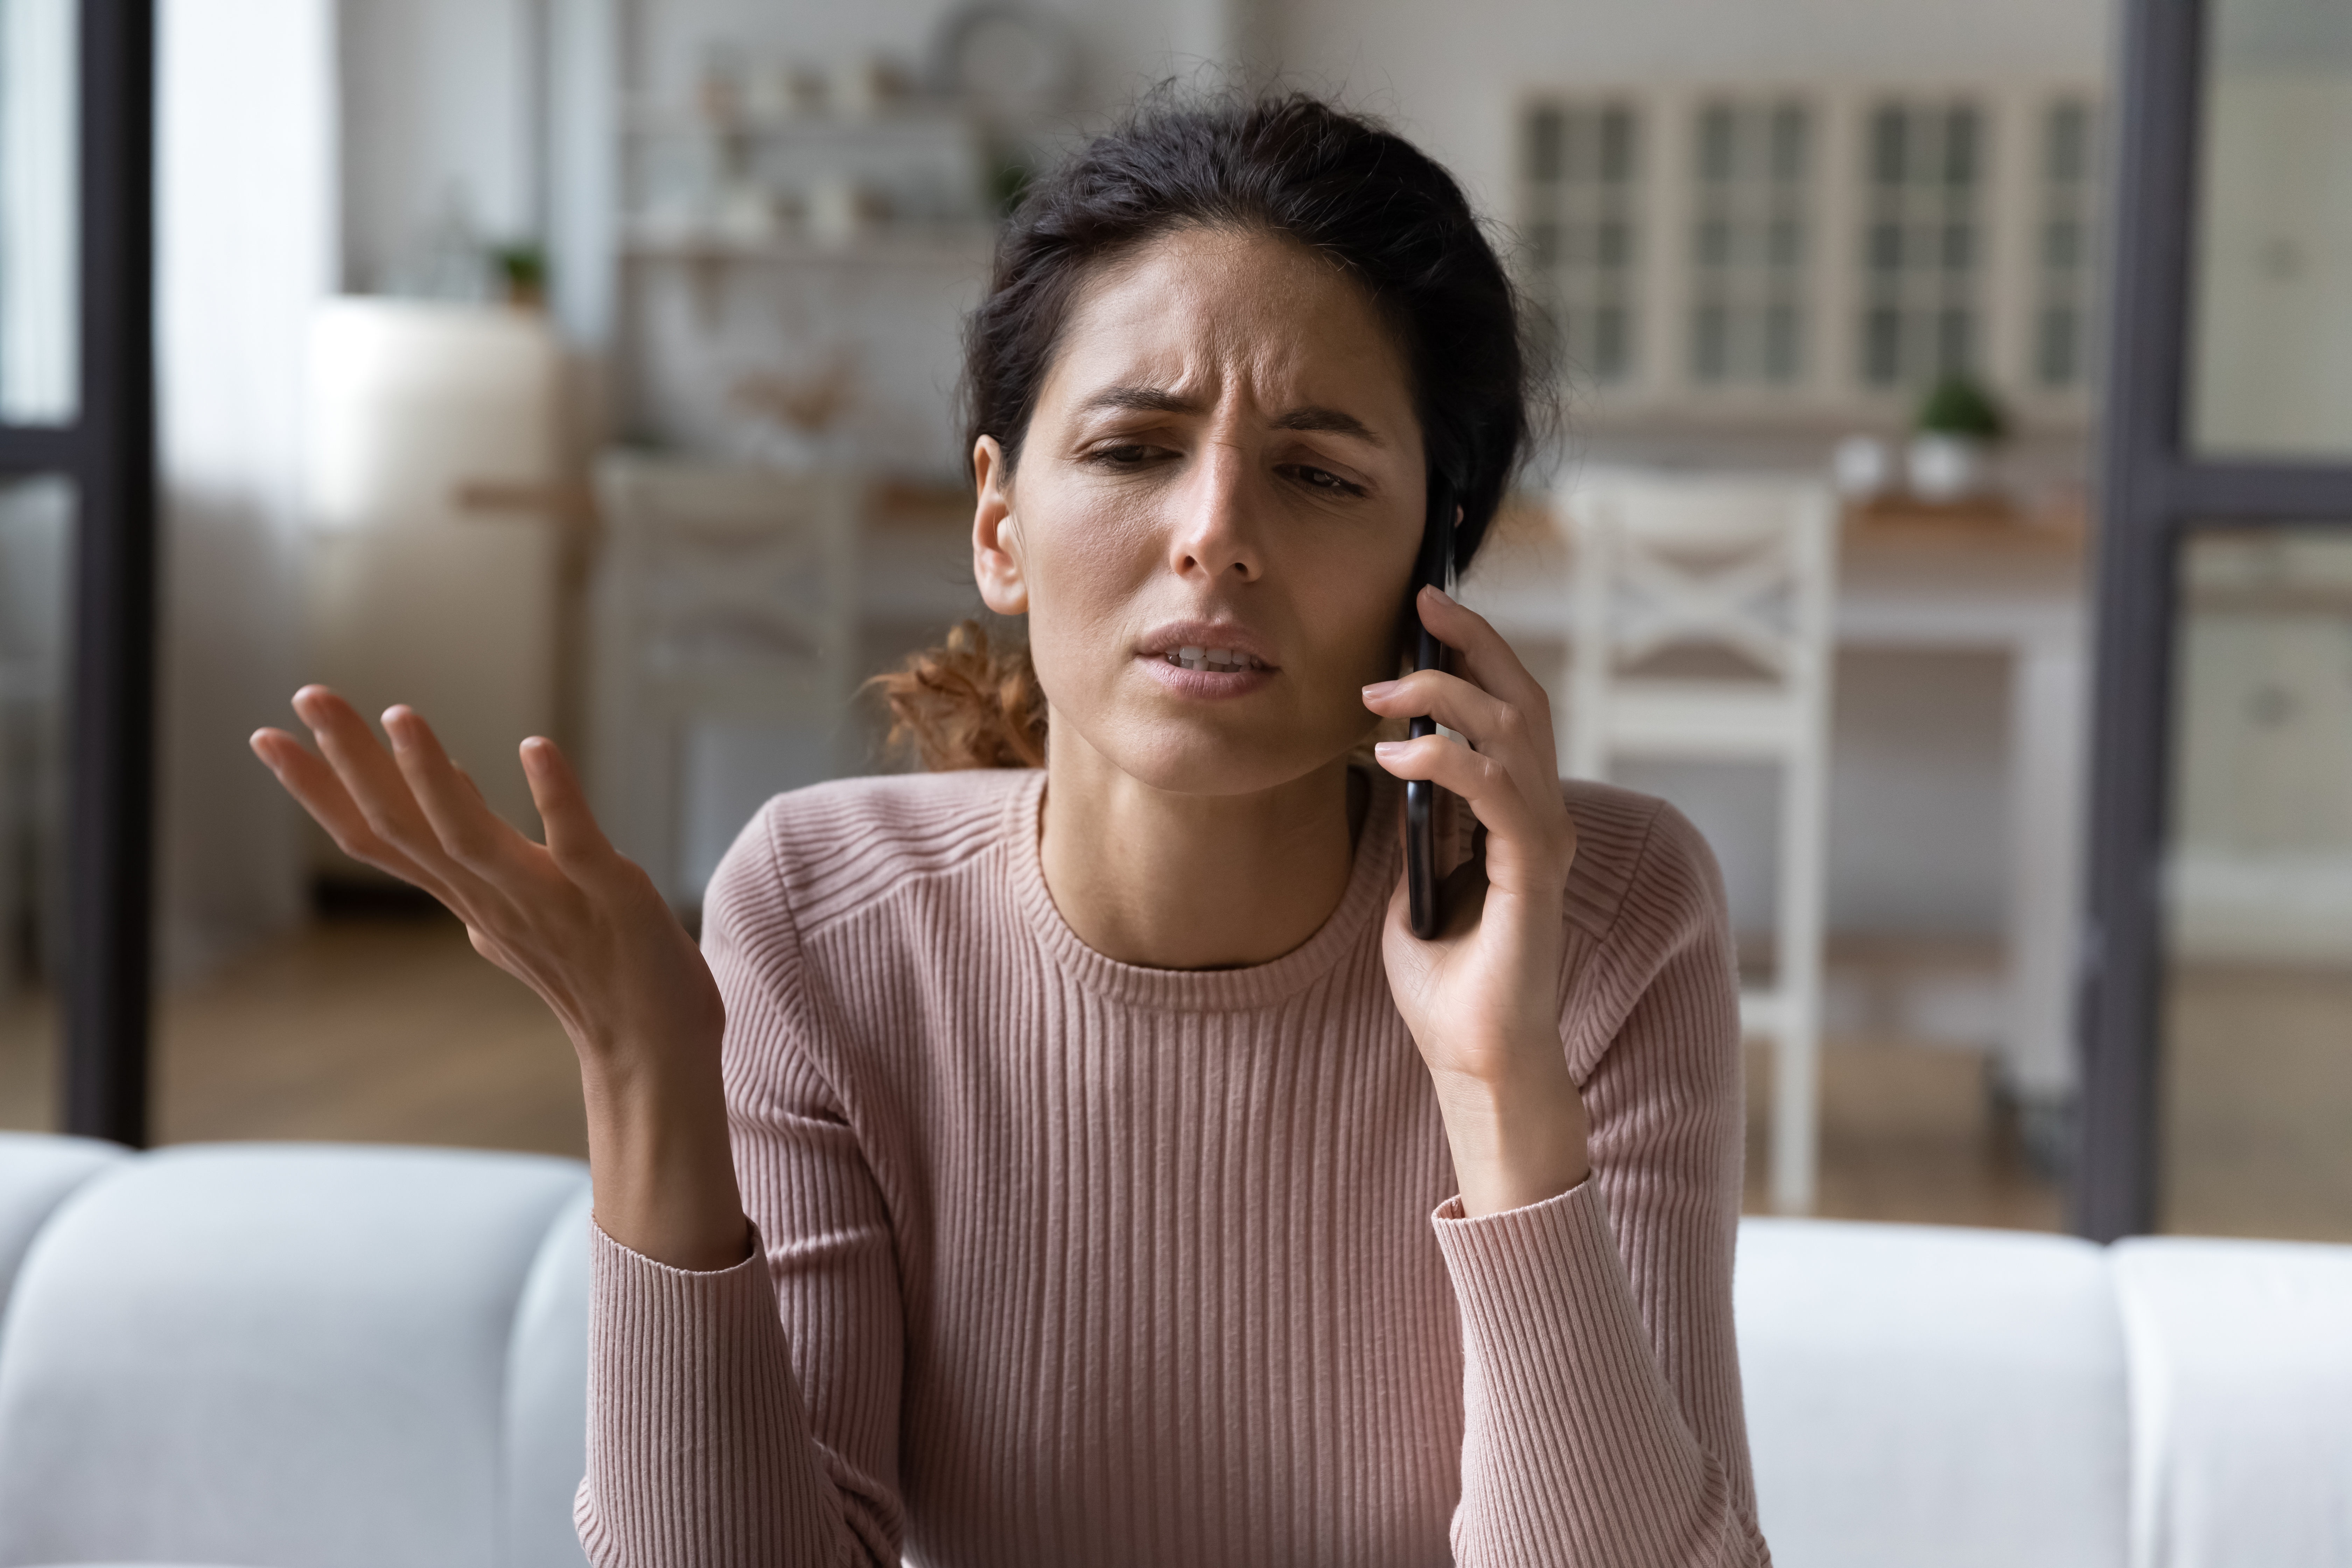 Verärgerte Frau beim Telefonieren | Quelle: Shutterstock